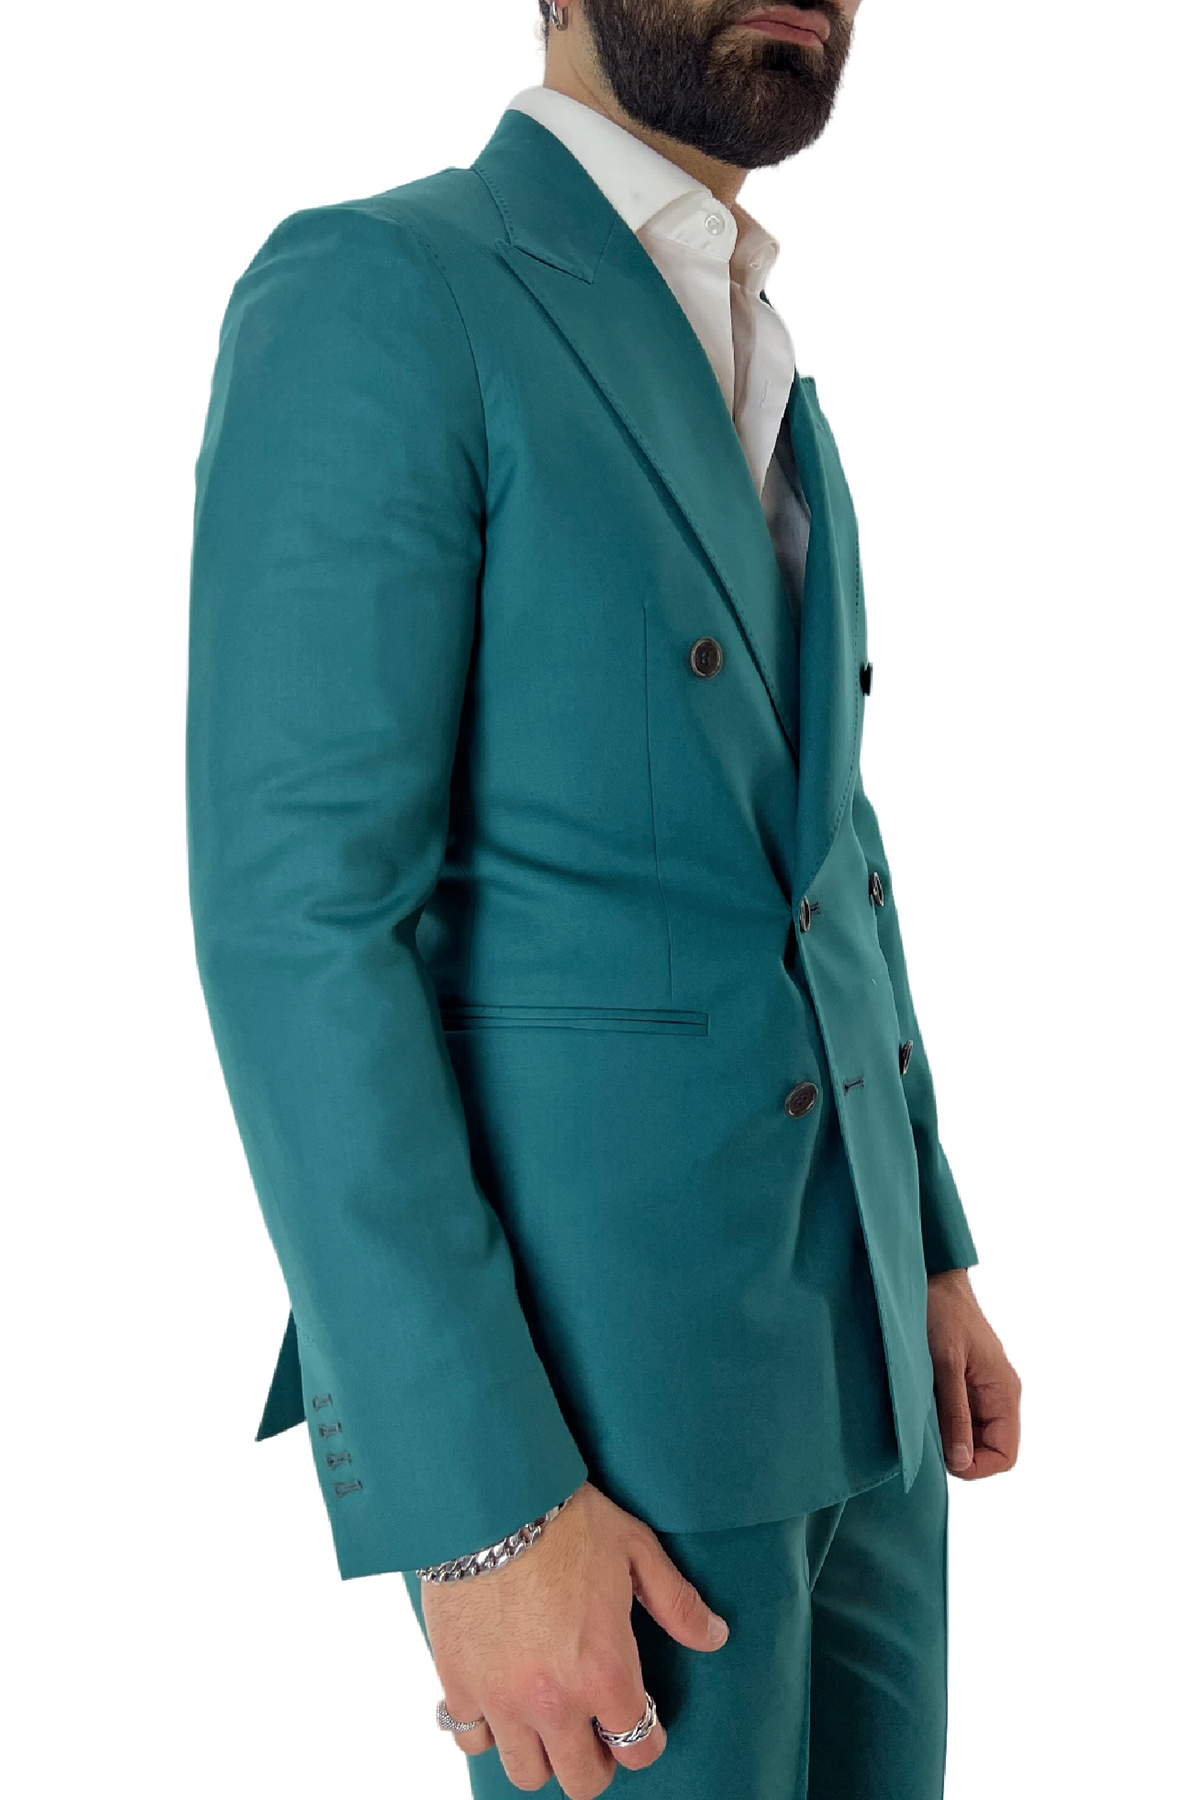 Giacca uomo doppiopetto verde menta in fresco lana 100% tasche a filo Holland & Sherry